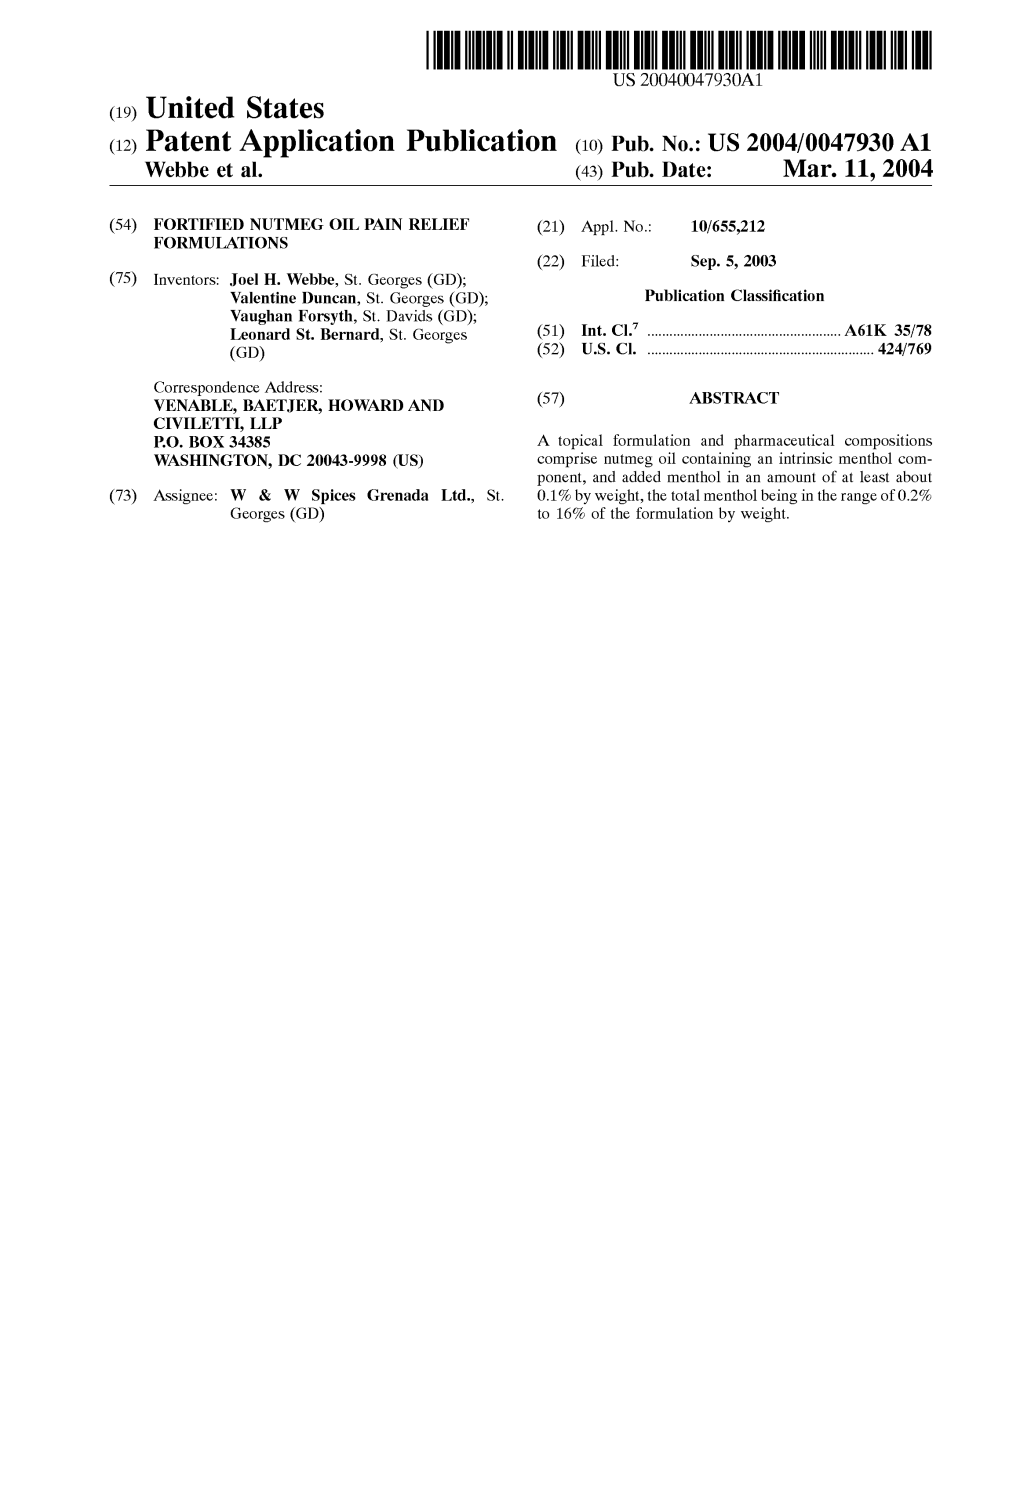 (12) Patent Application Publication (10) Pub. No.: US 2004/004793.0 A1 Webbe Et Al